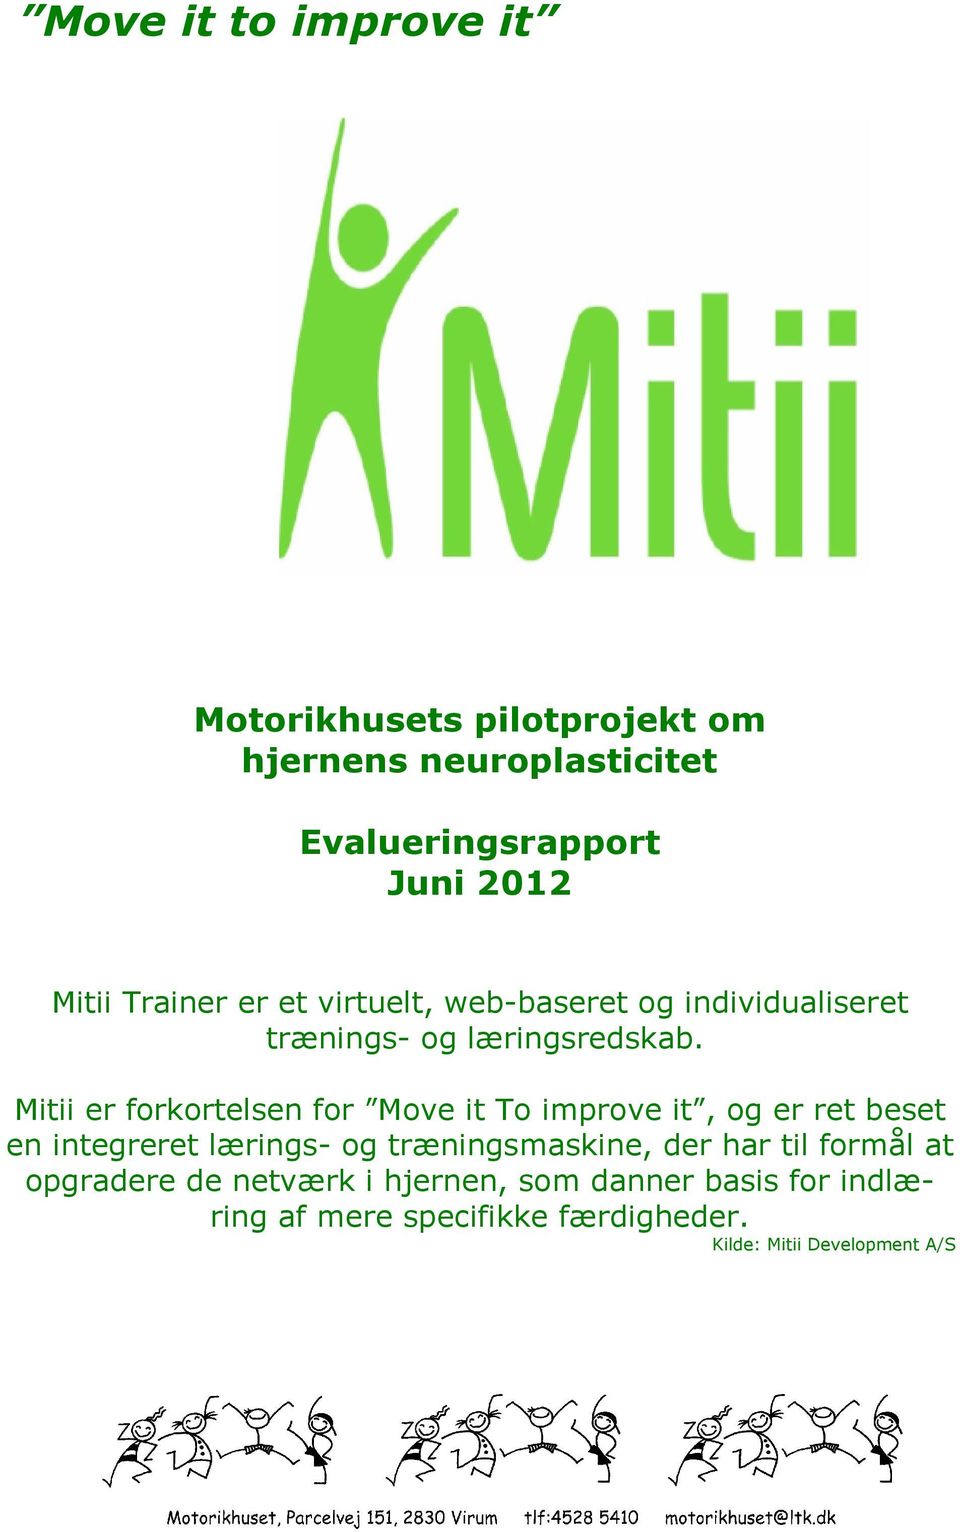 Mitii er forkortelsen for Move it To improve it, og er ret beset en integreret lærings- og træningsmaskine, der